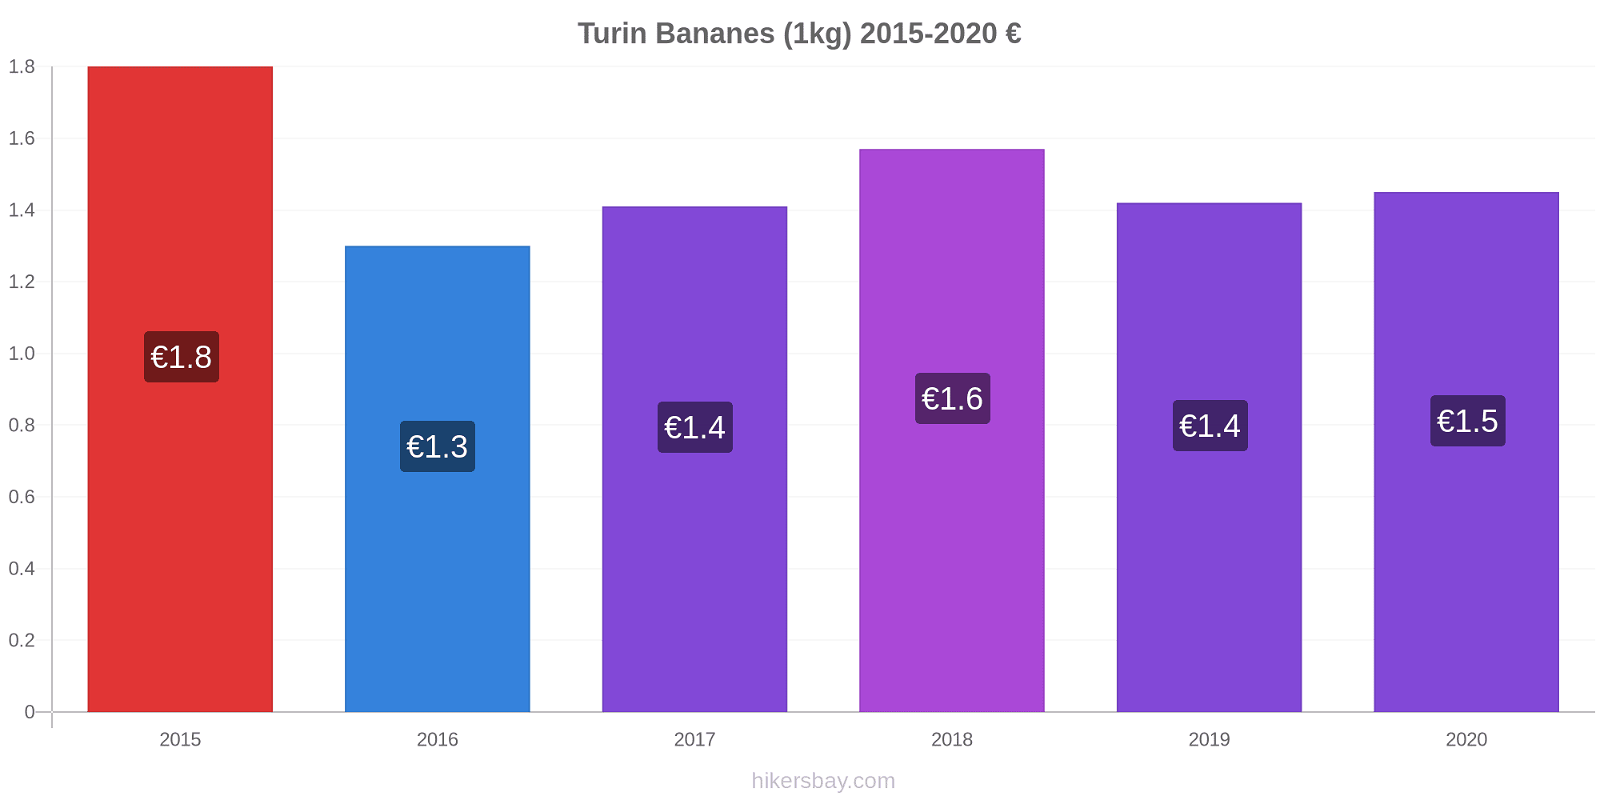 Turin changements de prix Bananes (1kg) hikersbay.com